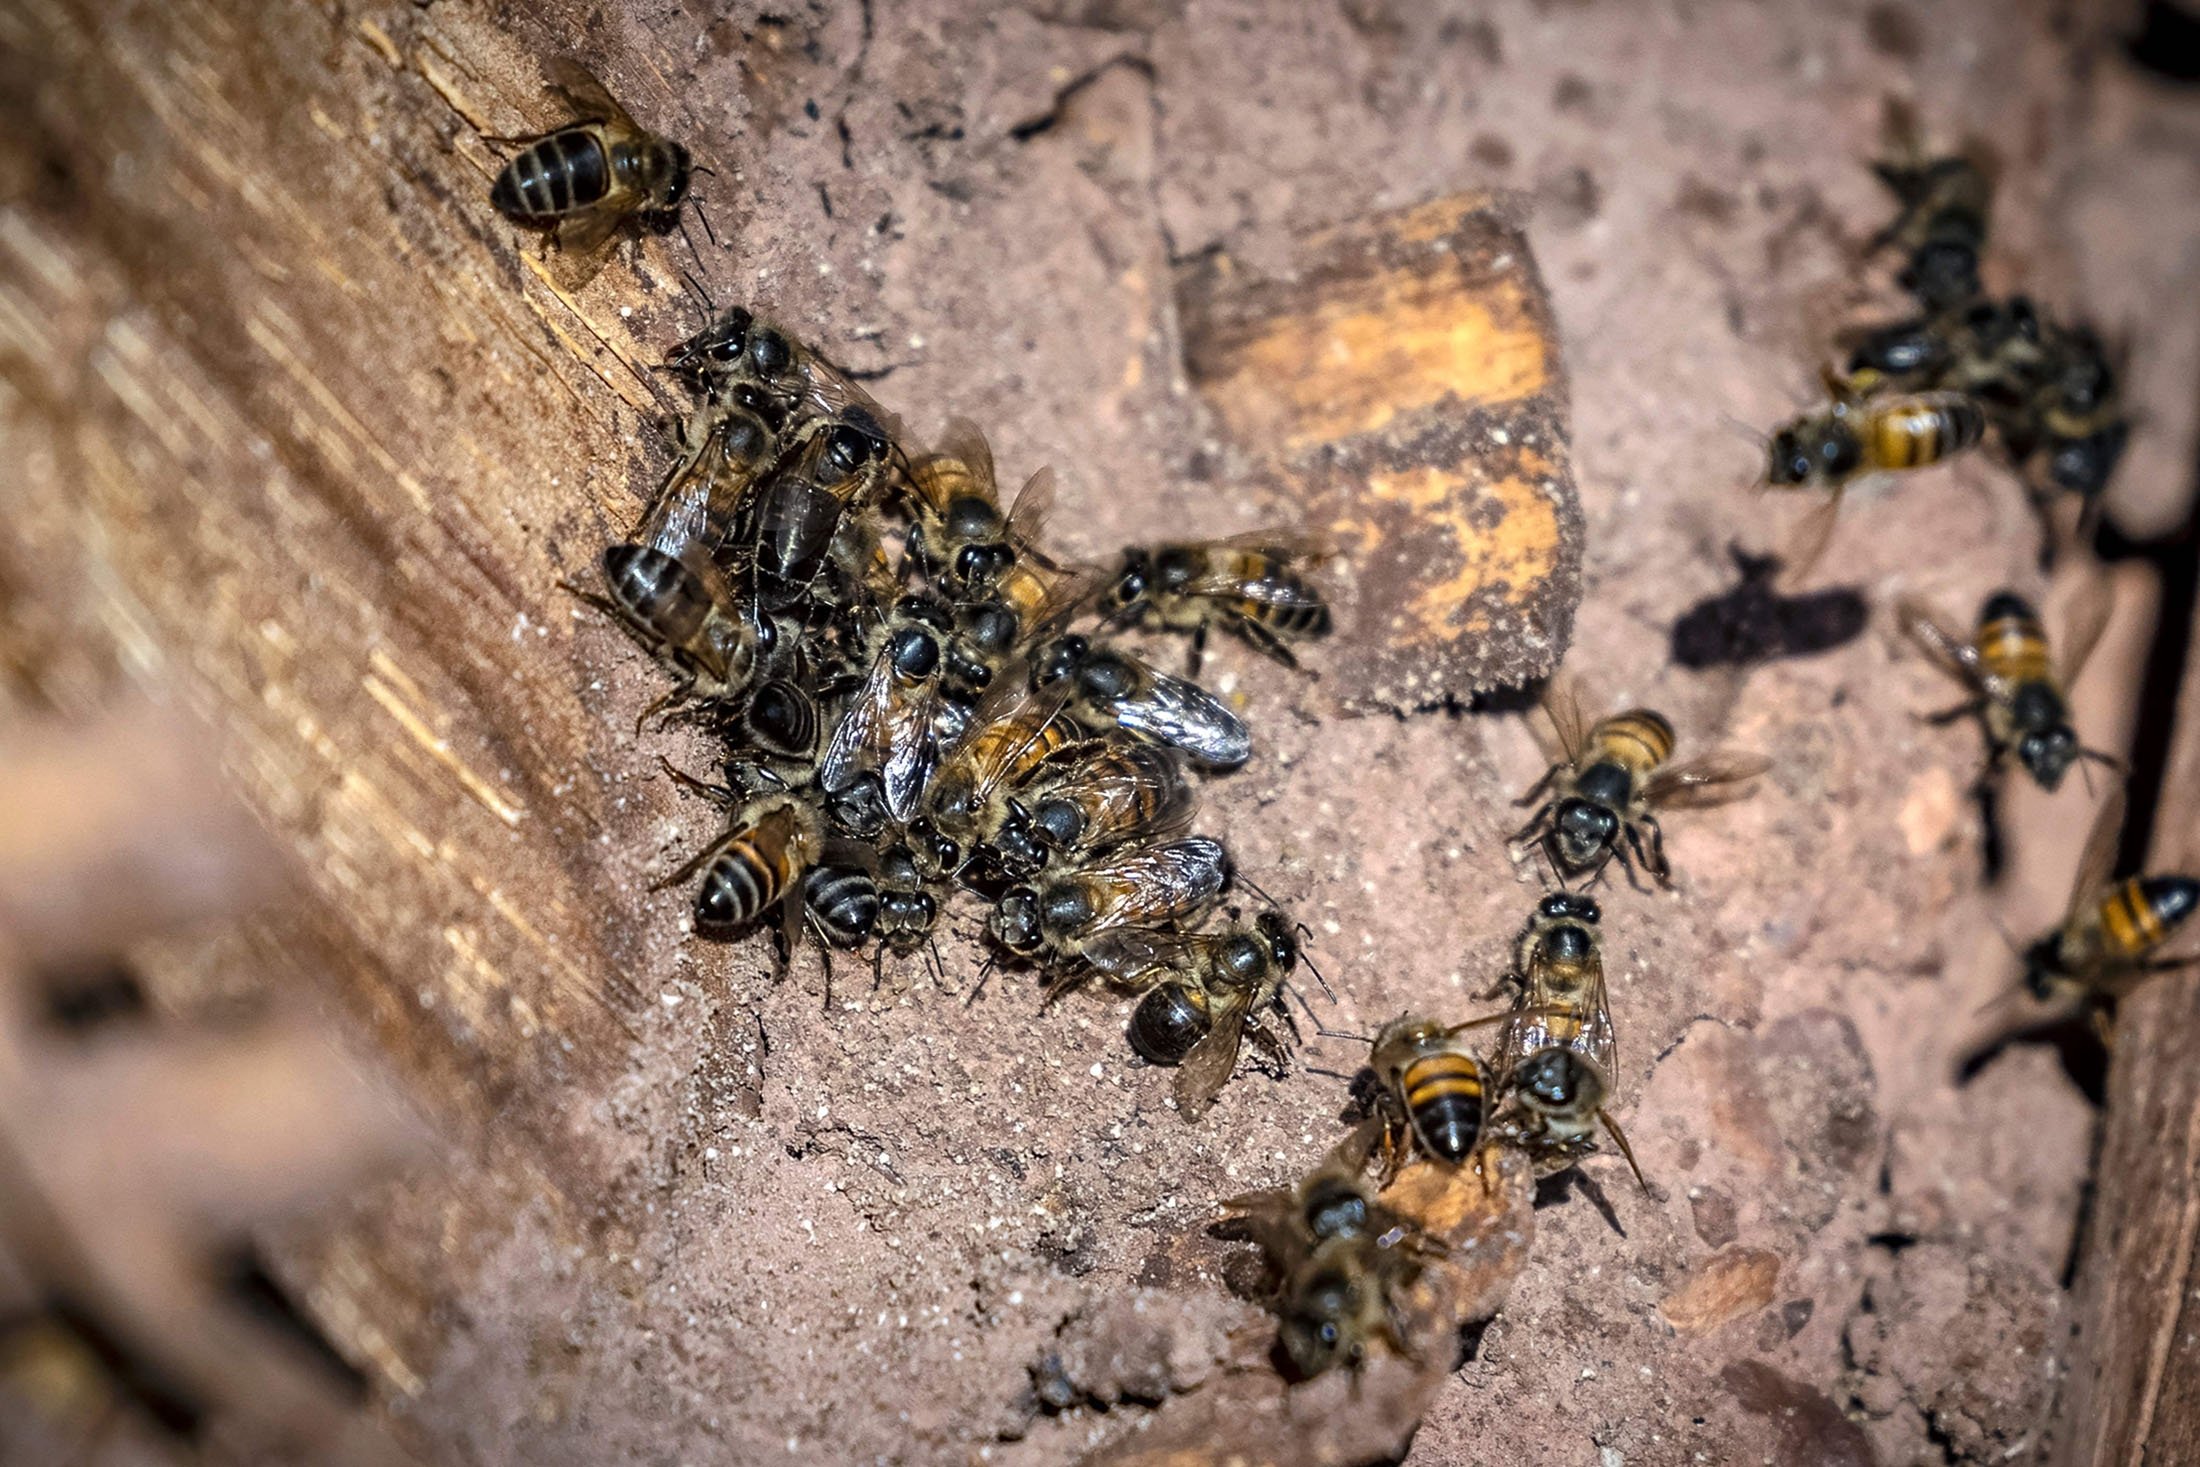 Lebah dapat dilihat di Inzerki Apiary di desa Inzerki, di lereng bukit di jantung Cagar Biosfer Arganeraie, barat daya ibu kota Rabat, Maroko, 18 Februari 2022. (AFP Photo)